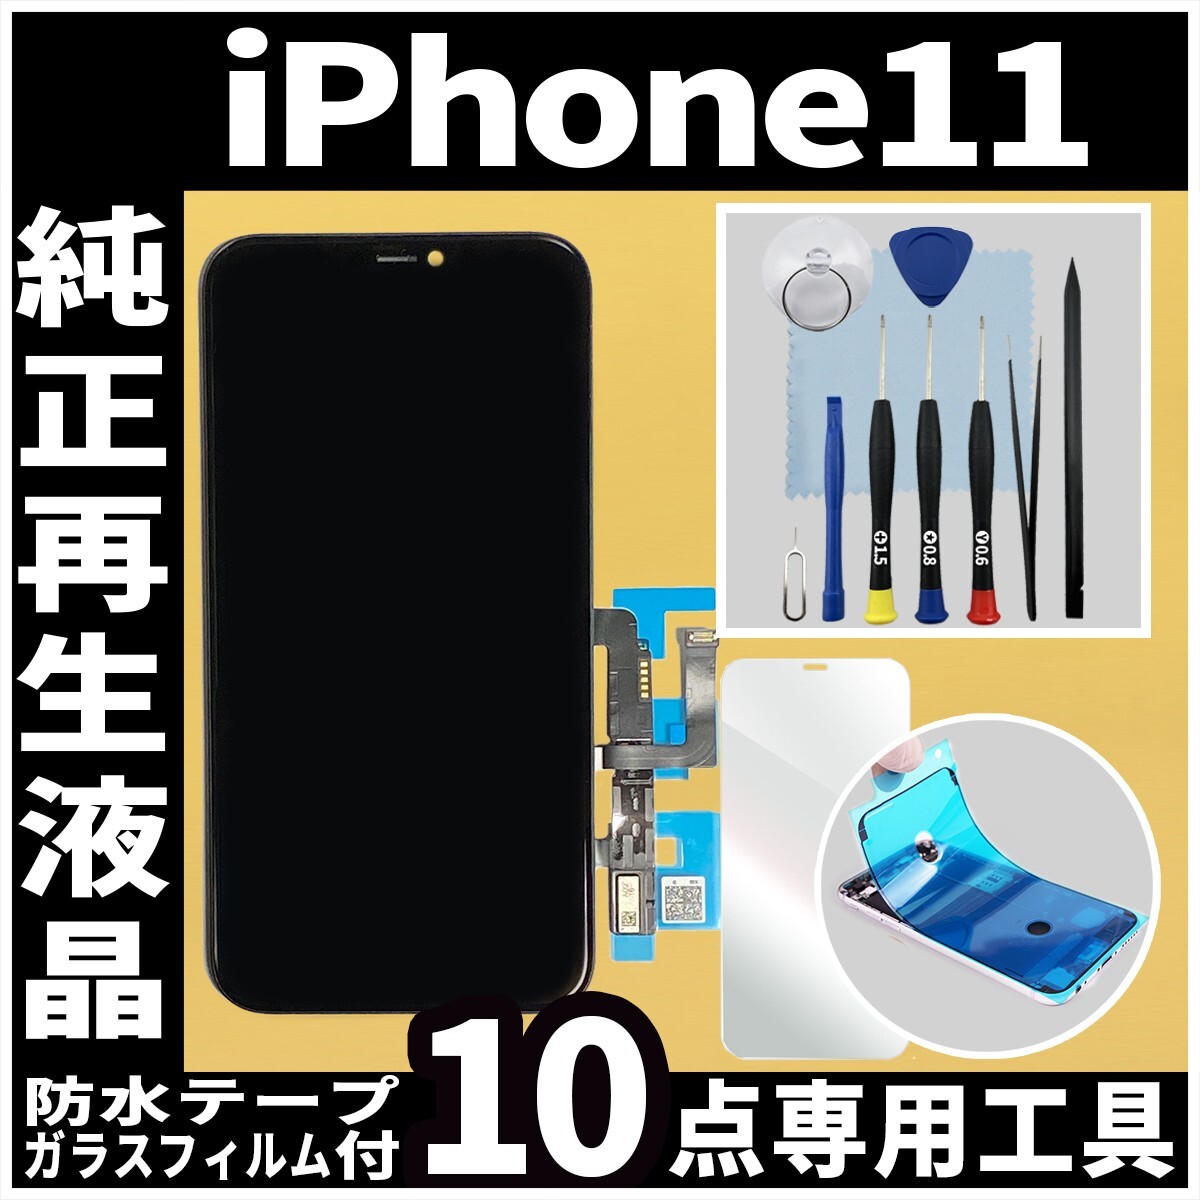 純正再生品 iPhone11 フロントパネル 純正液晶 自社再生 業者 LCD 交換 リペア 画面割れ iphone 修理 ガラス割れ ディスプレイ.の画像1